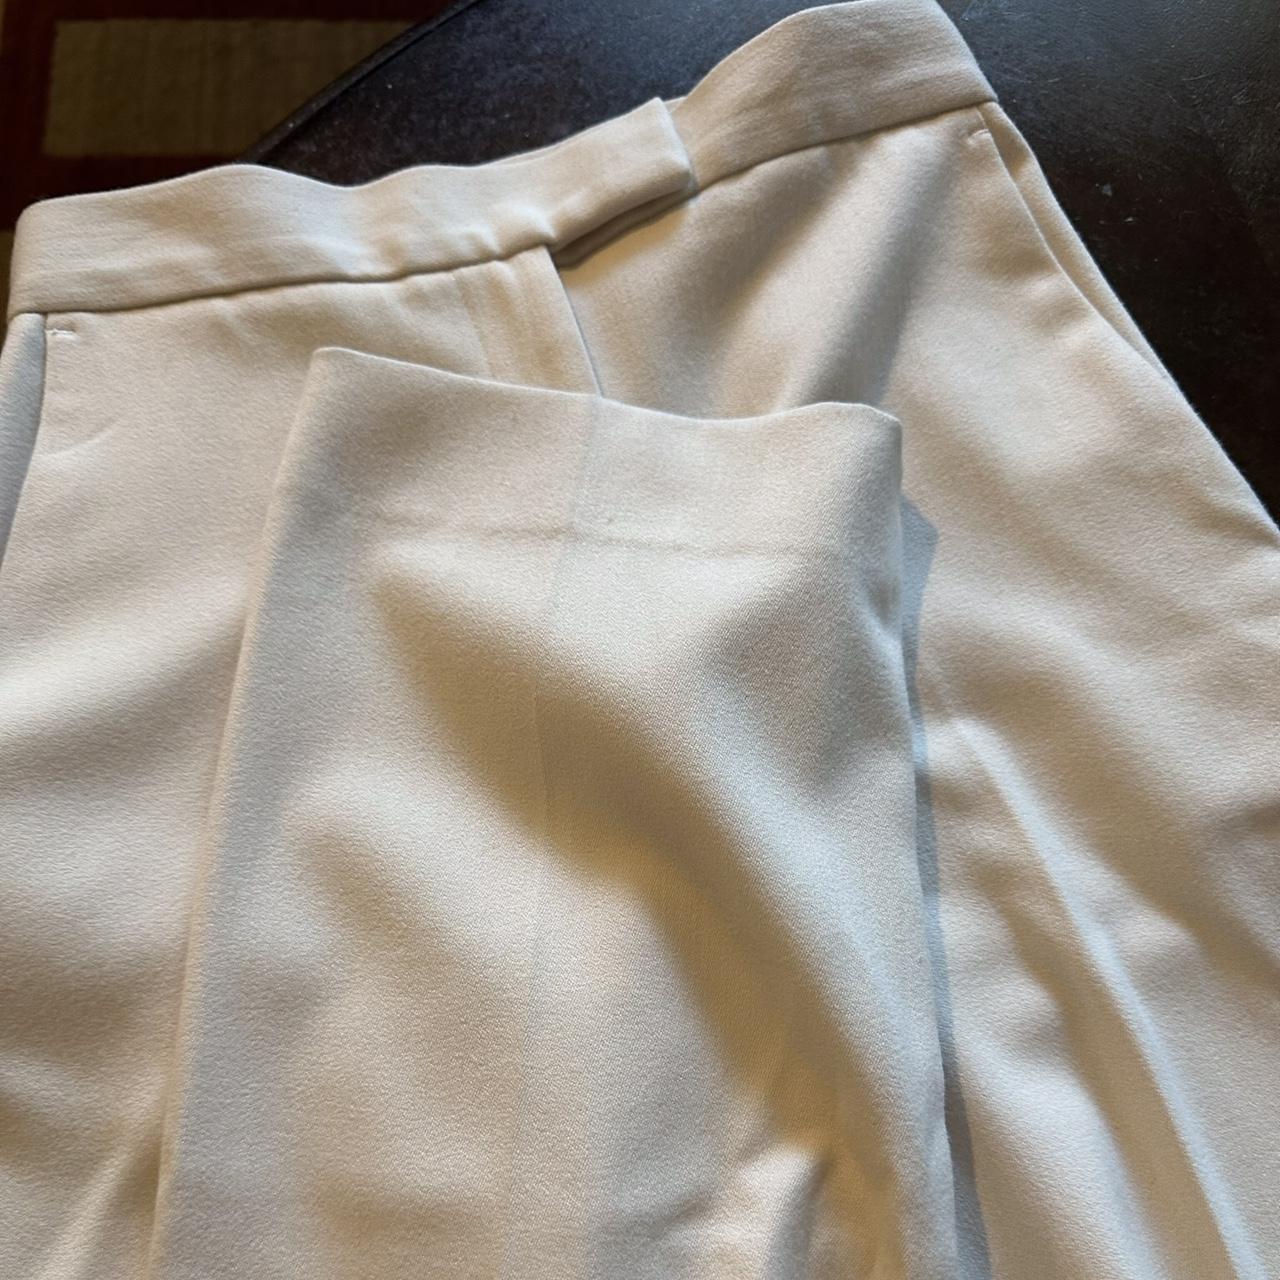 Djerf Avenue Women's Cream Trousers (2)